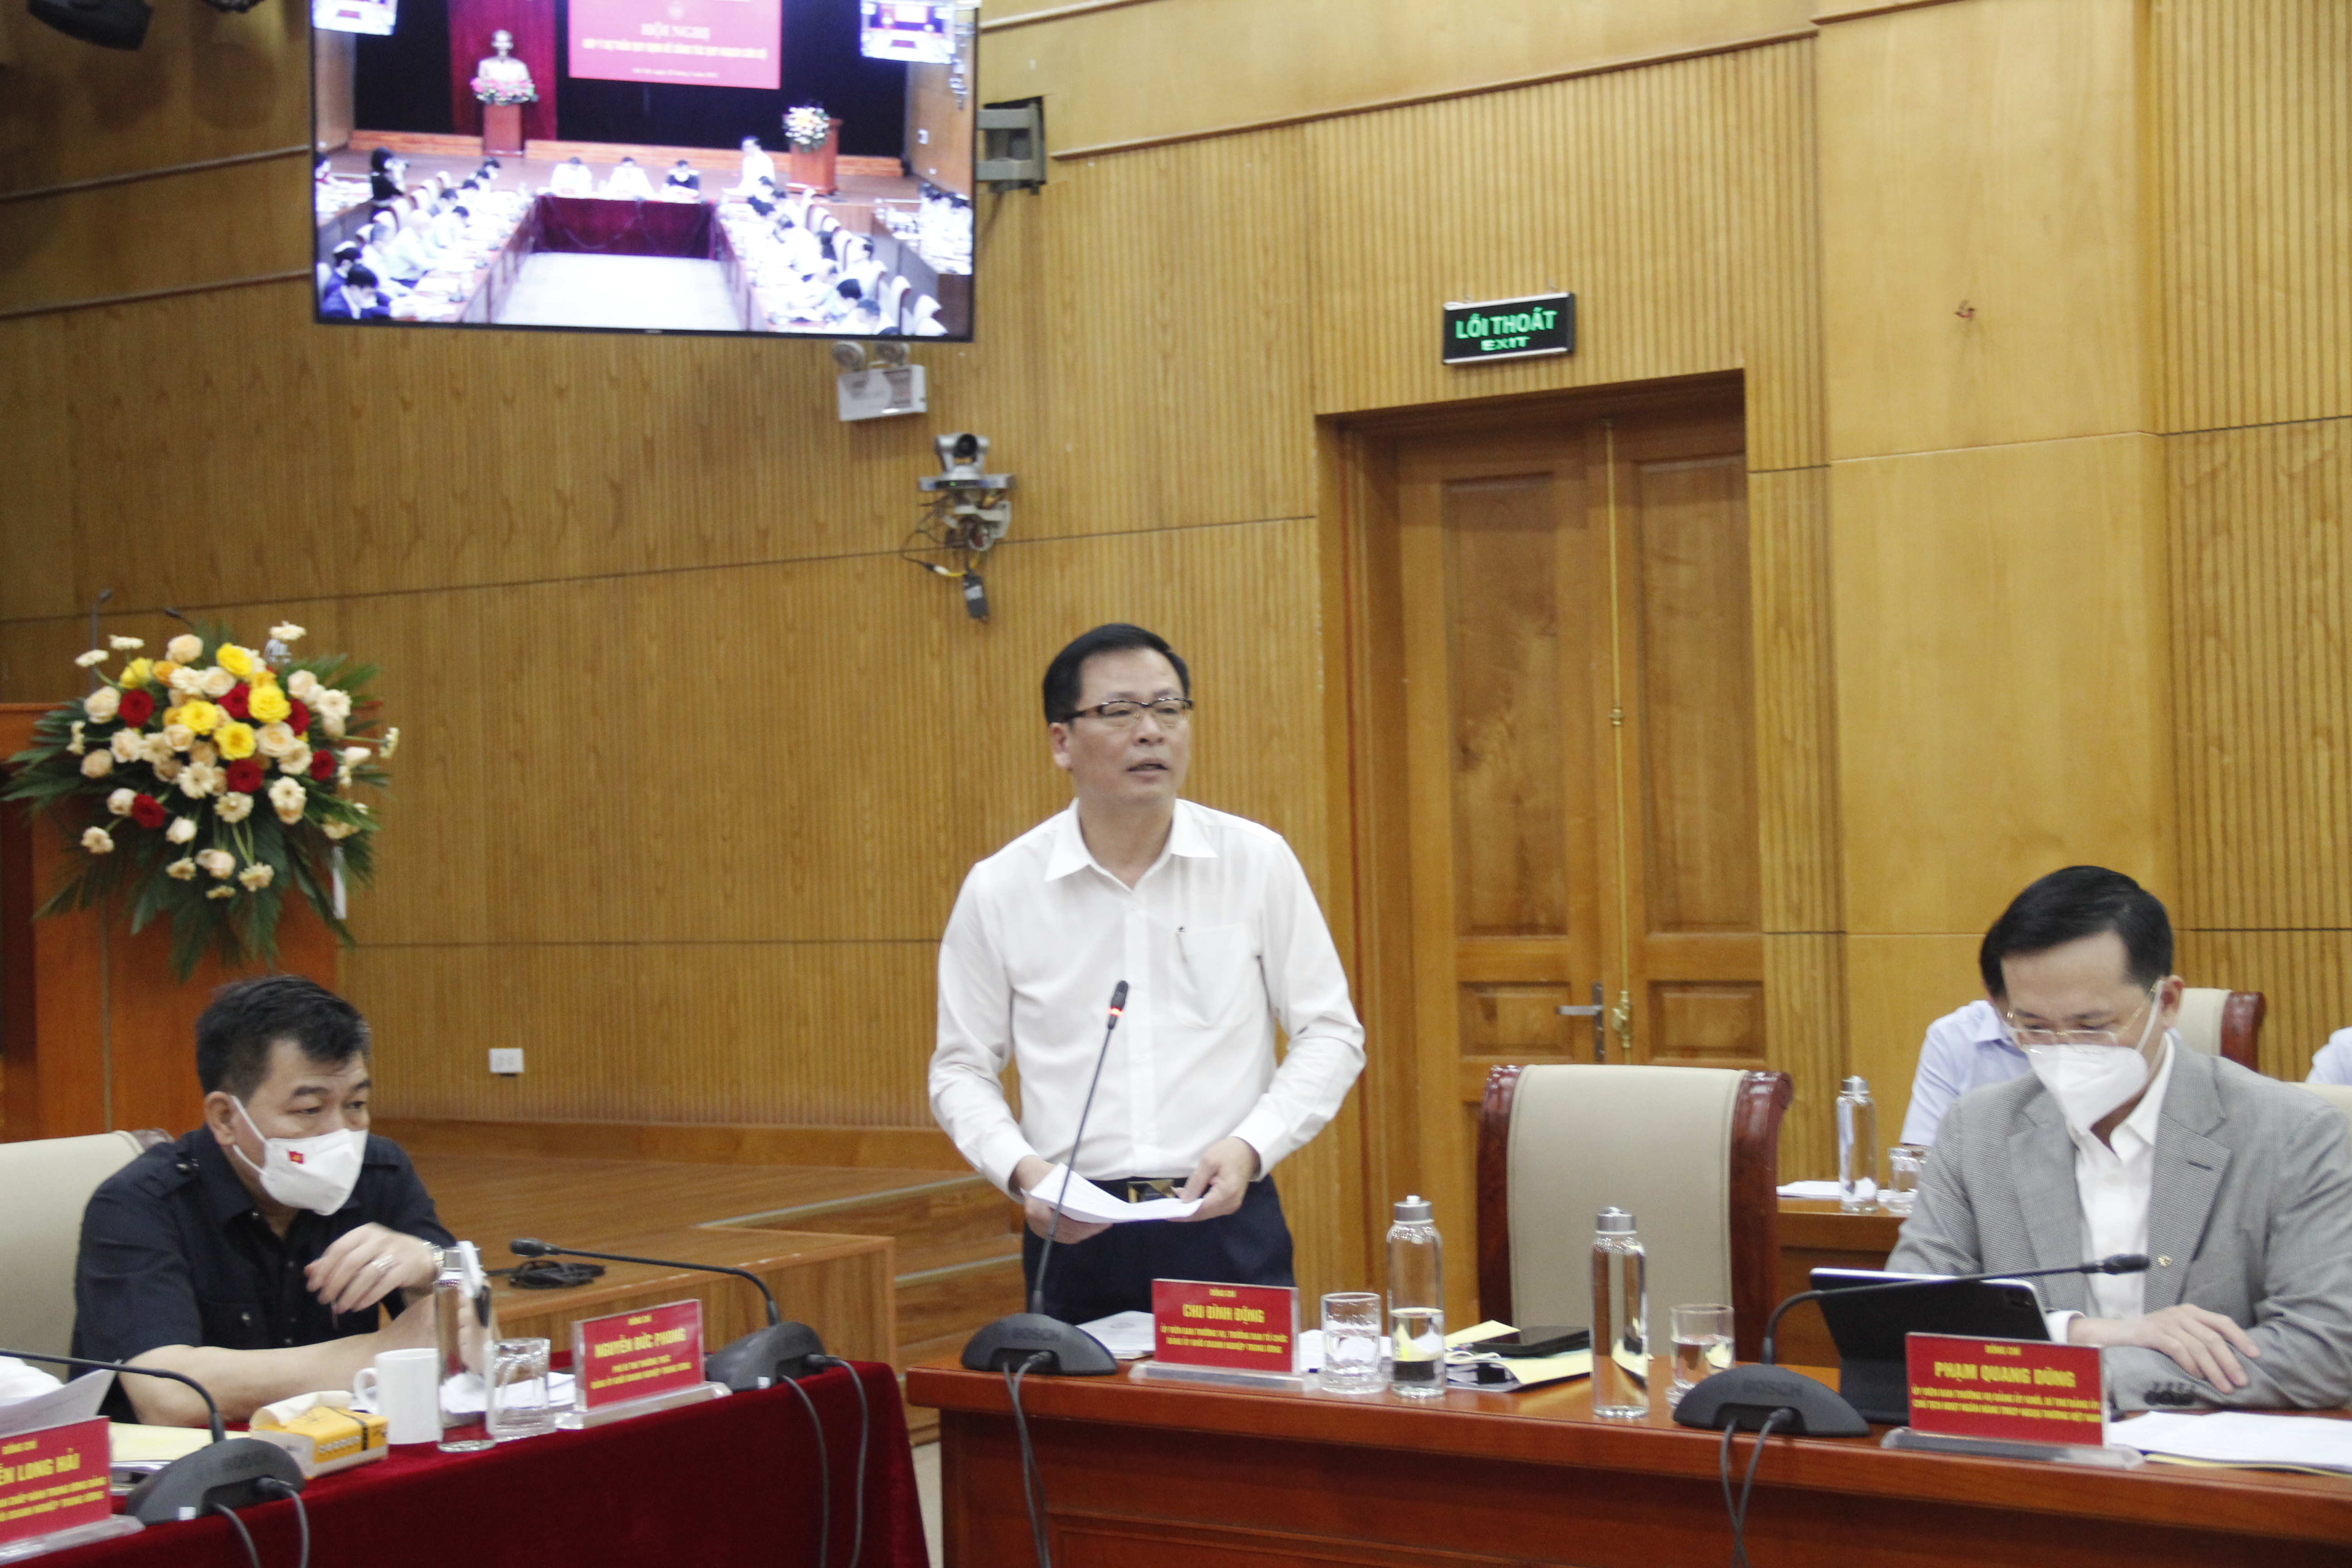 Đồng chí Chu Đình Động, Ủy viên Ban Thường vụ Đảng ủy Khối, Trưởng Ban Tổ chức Đảng ủy Khối  trình bầy báo cáo đề dẫn về công tác quy hoạch cán bộ.